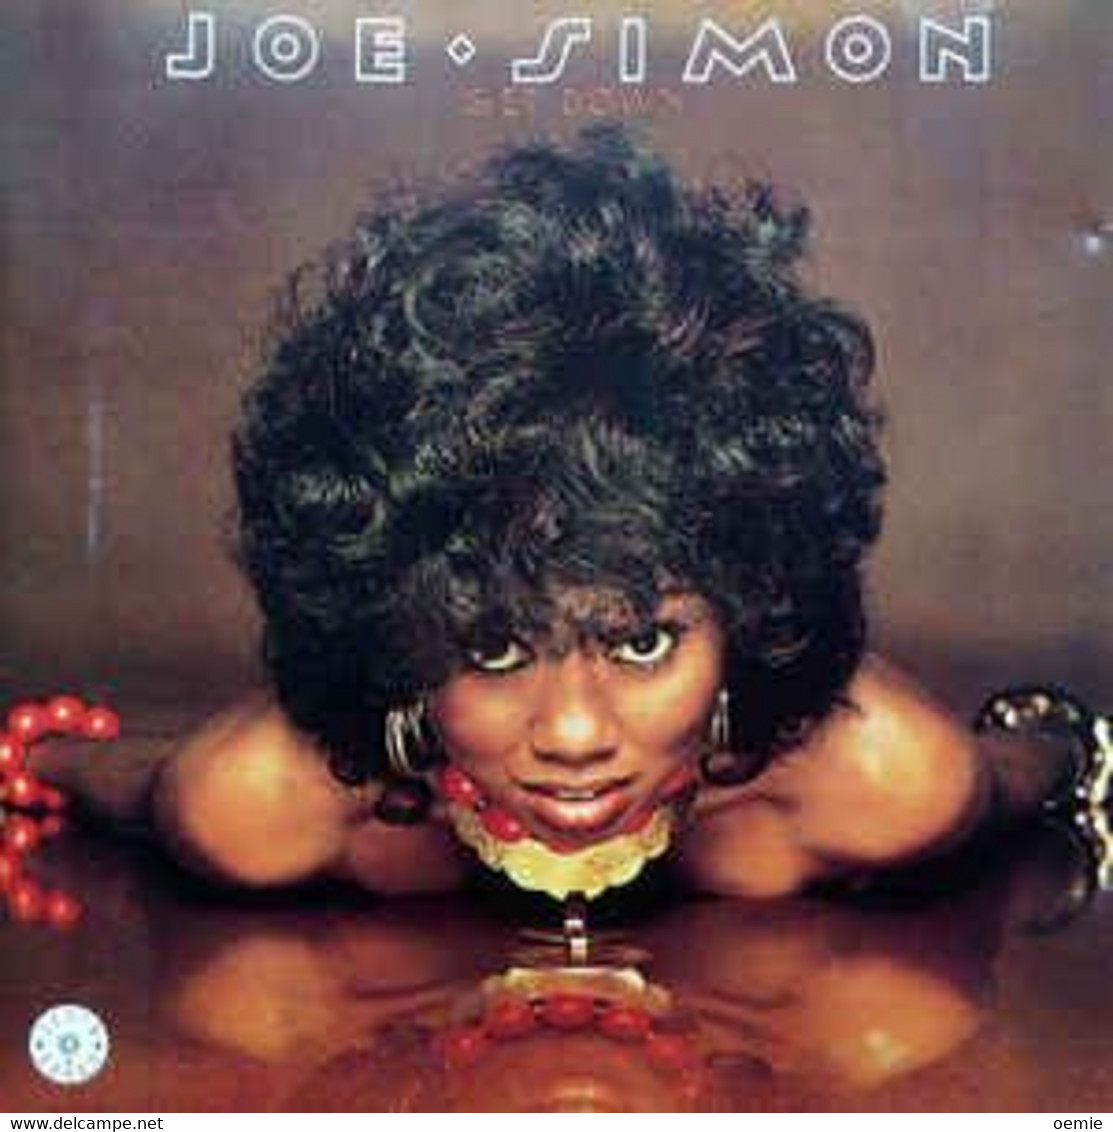 JOE  SIMON  ° GET DOWN  //  CD ALBUM NEUF SOUS CELLOPHANE - Soul - R&B